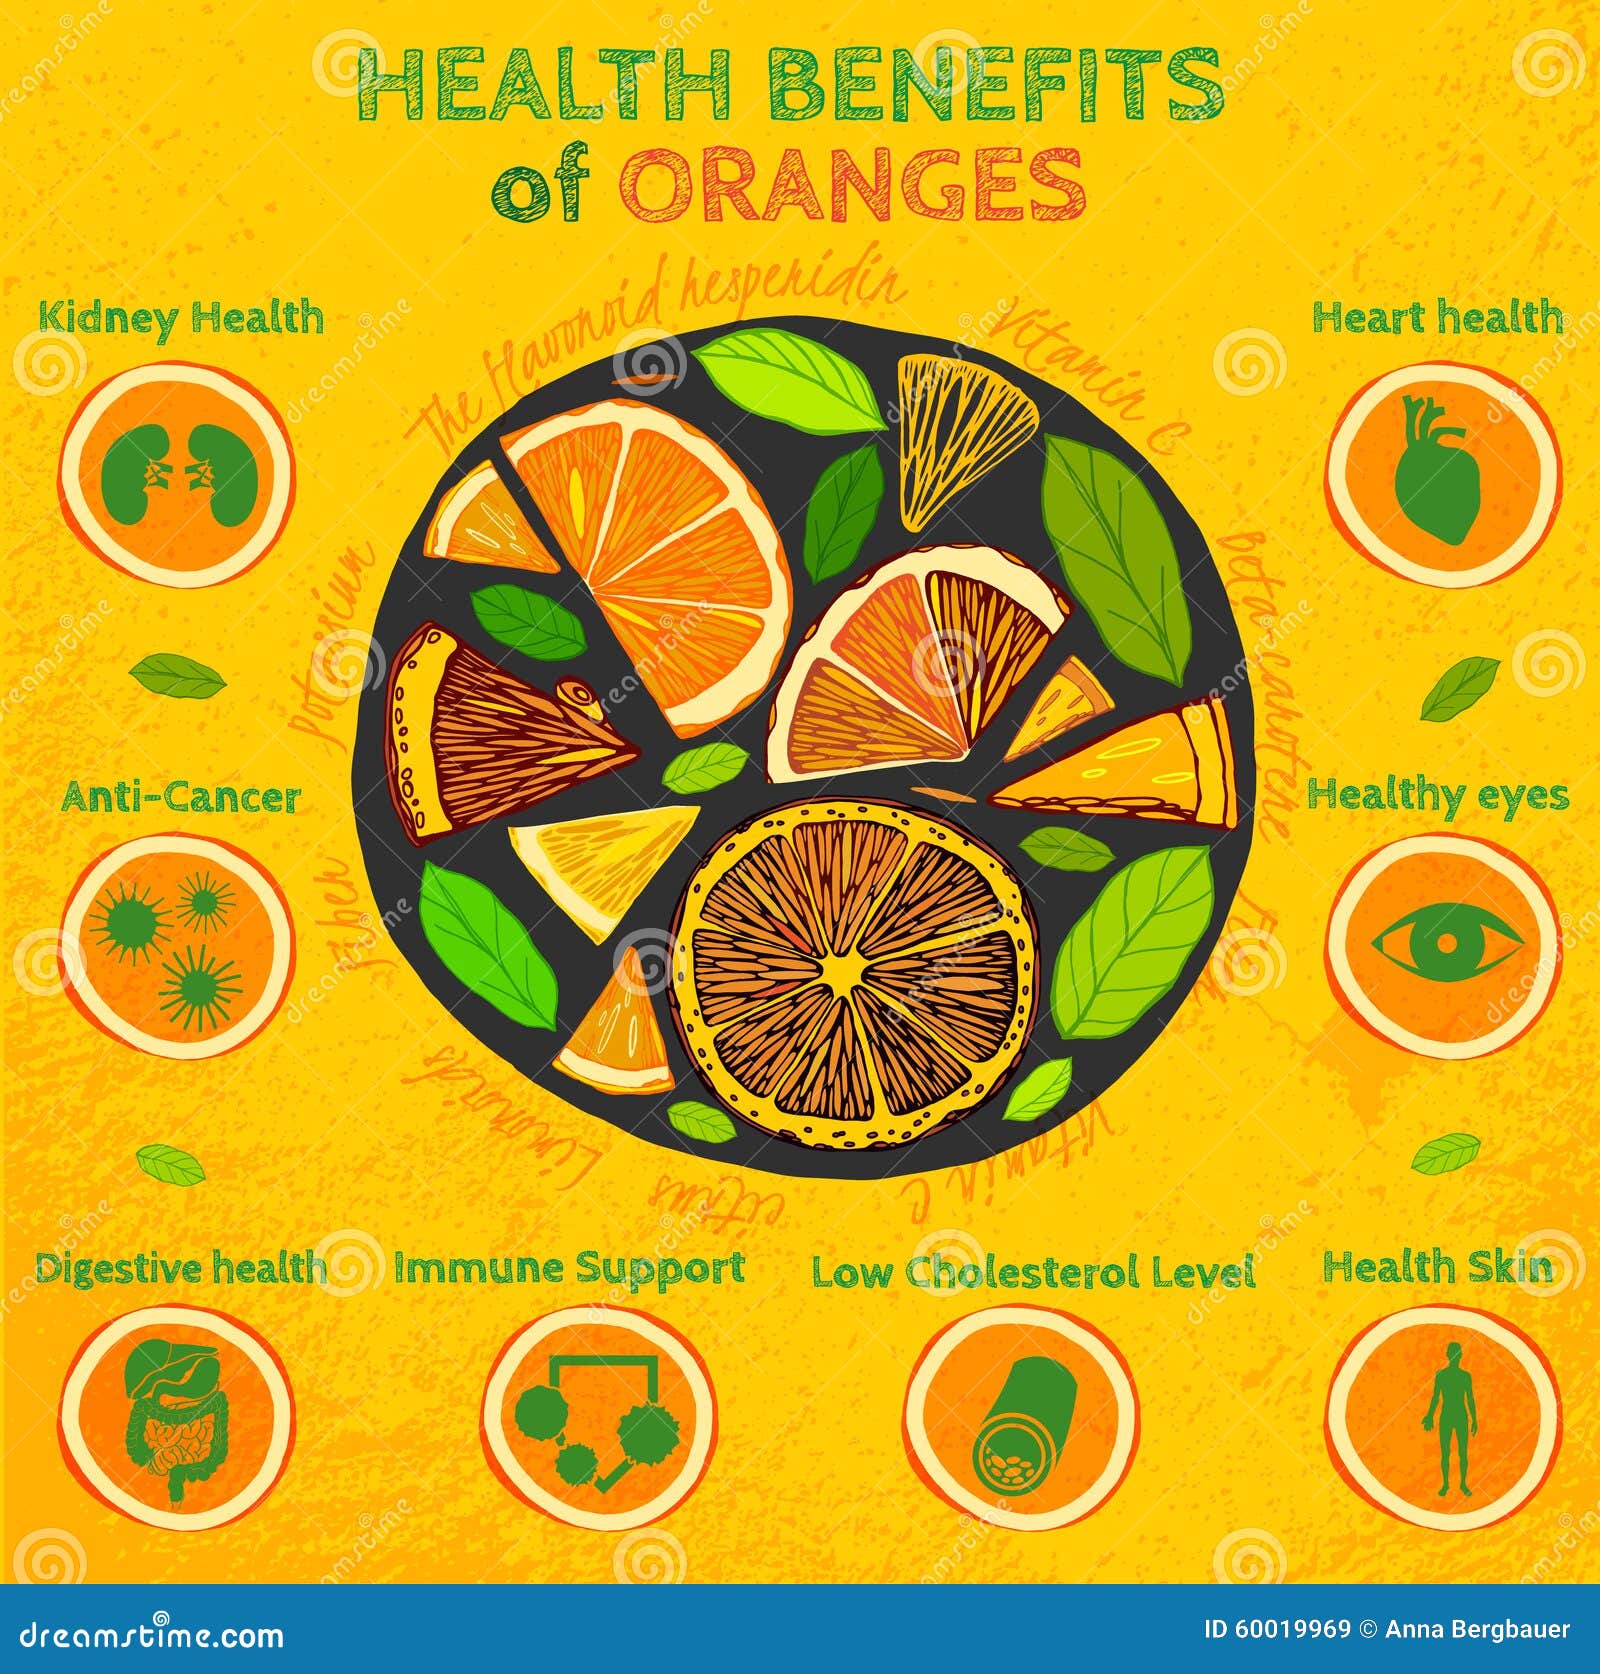 Orange Health Benefits Stock Vector Image 60019929 regarding Health Benefits Of Oranges